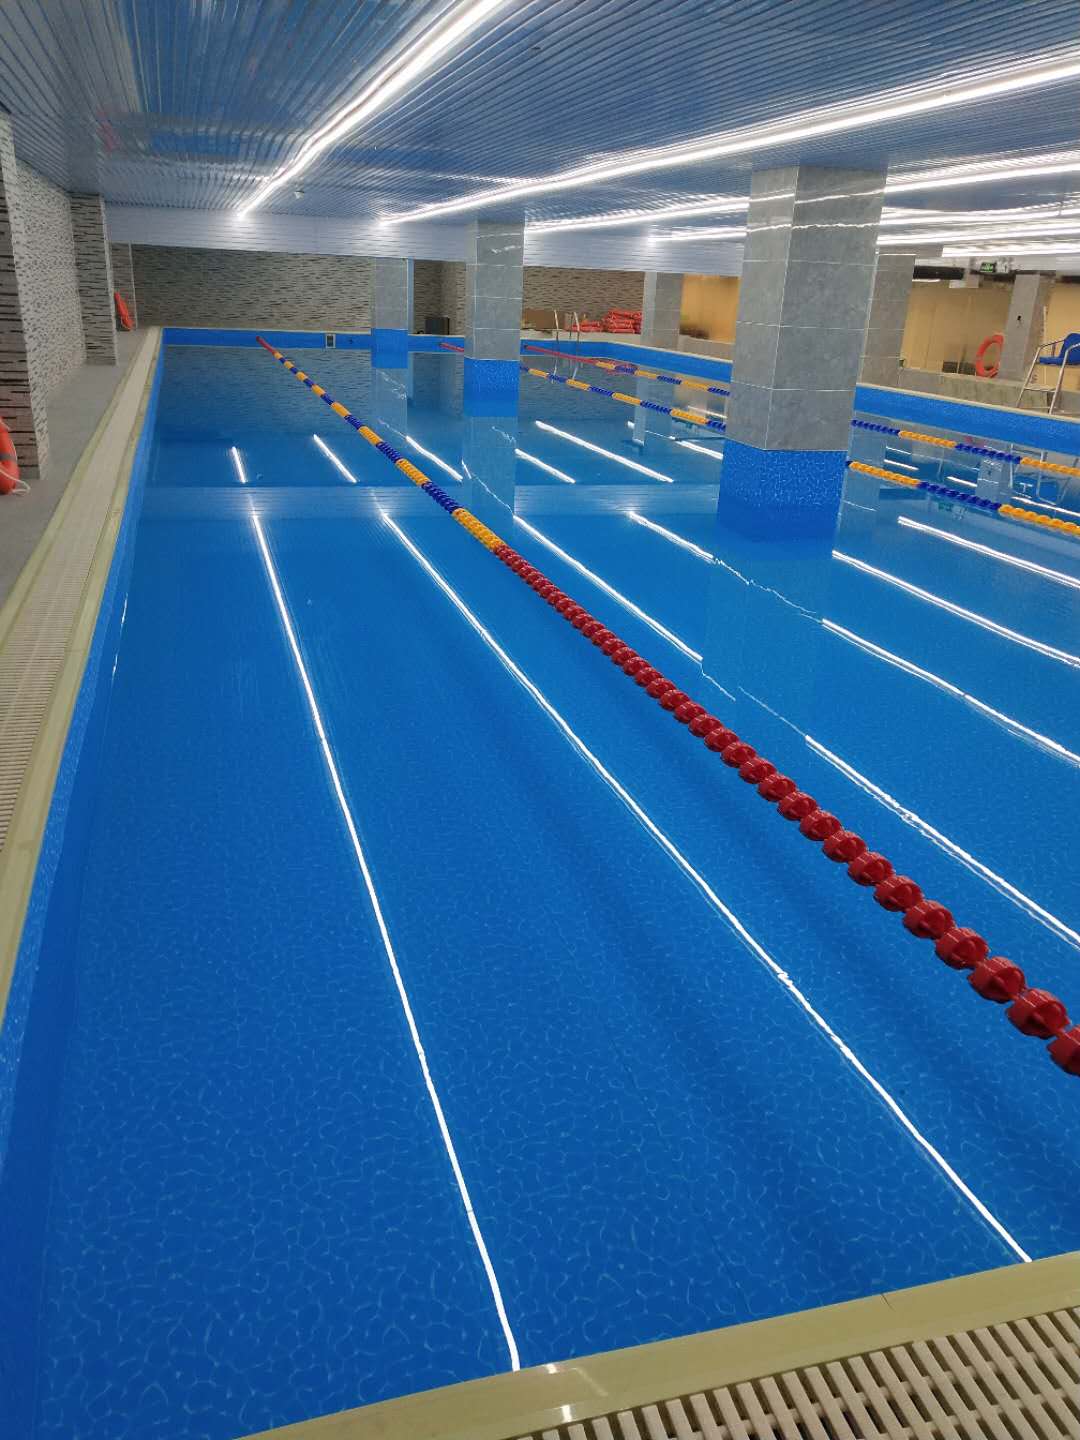 装配式游泳池必将成为游泳池行业主流